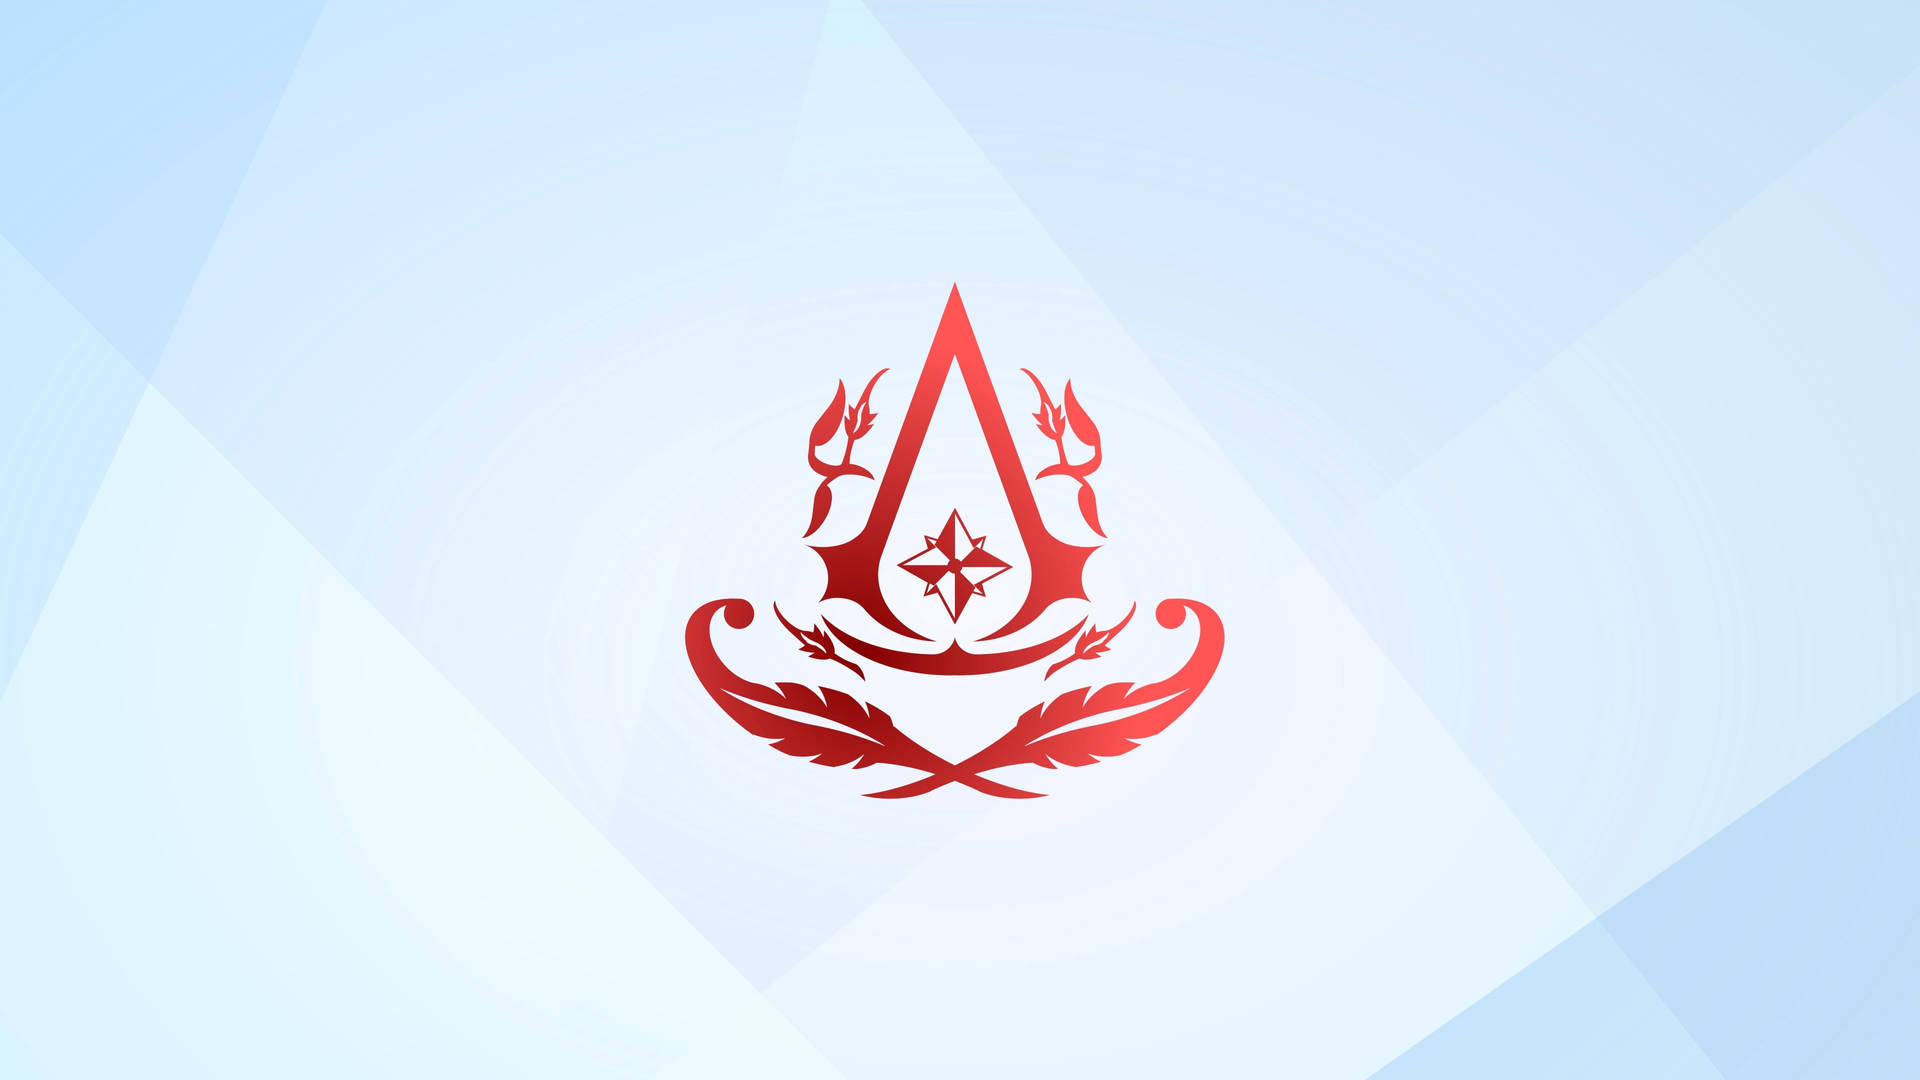 Assassin's Creed Elegant Gaming Logo Wallpaper